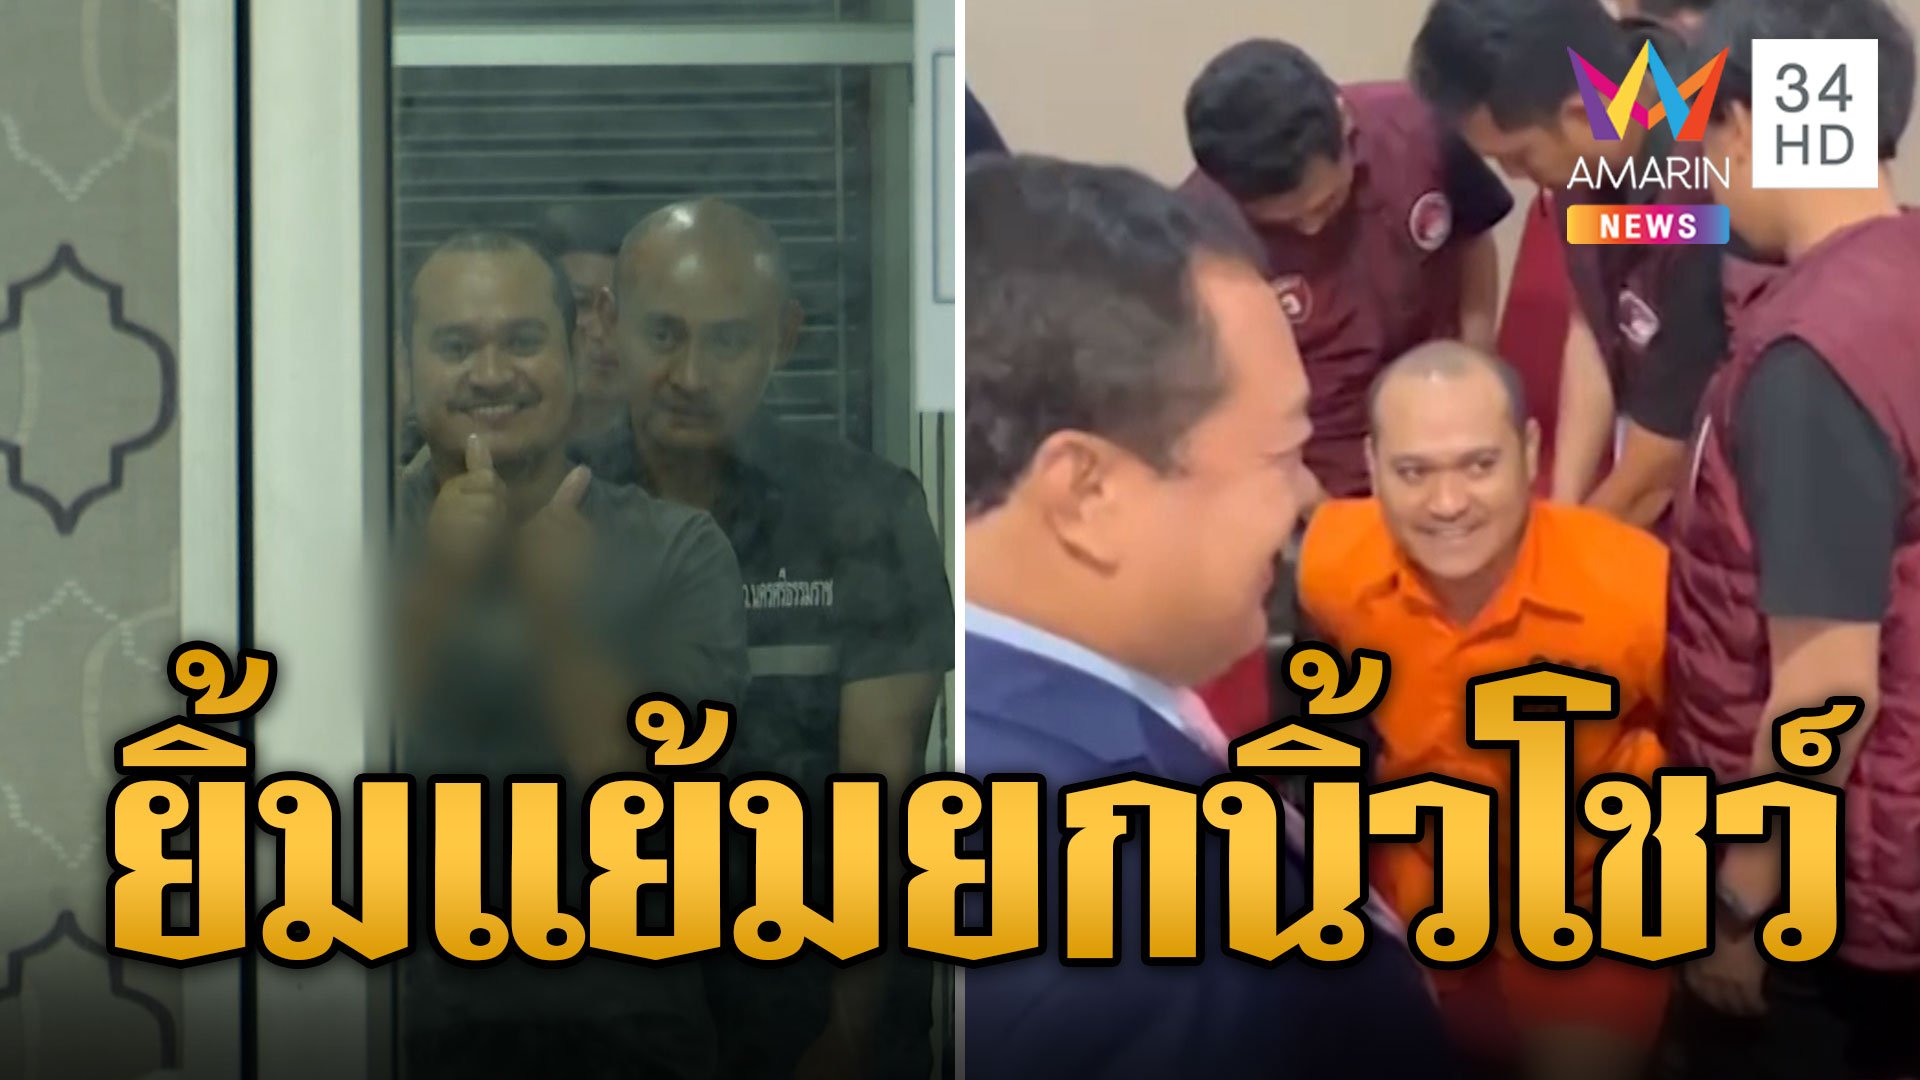 "แป้ง นาโหนด" กลับถึงไทย ยิ้มแย้มยกนิ้วโป้งโชว์ ตร.300 นายคุมเข้ม | ข่าวอรุณอมรินทร์ | 5 มิ.ย. 67 | AMARIN TVHD34